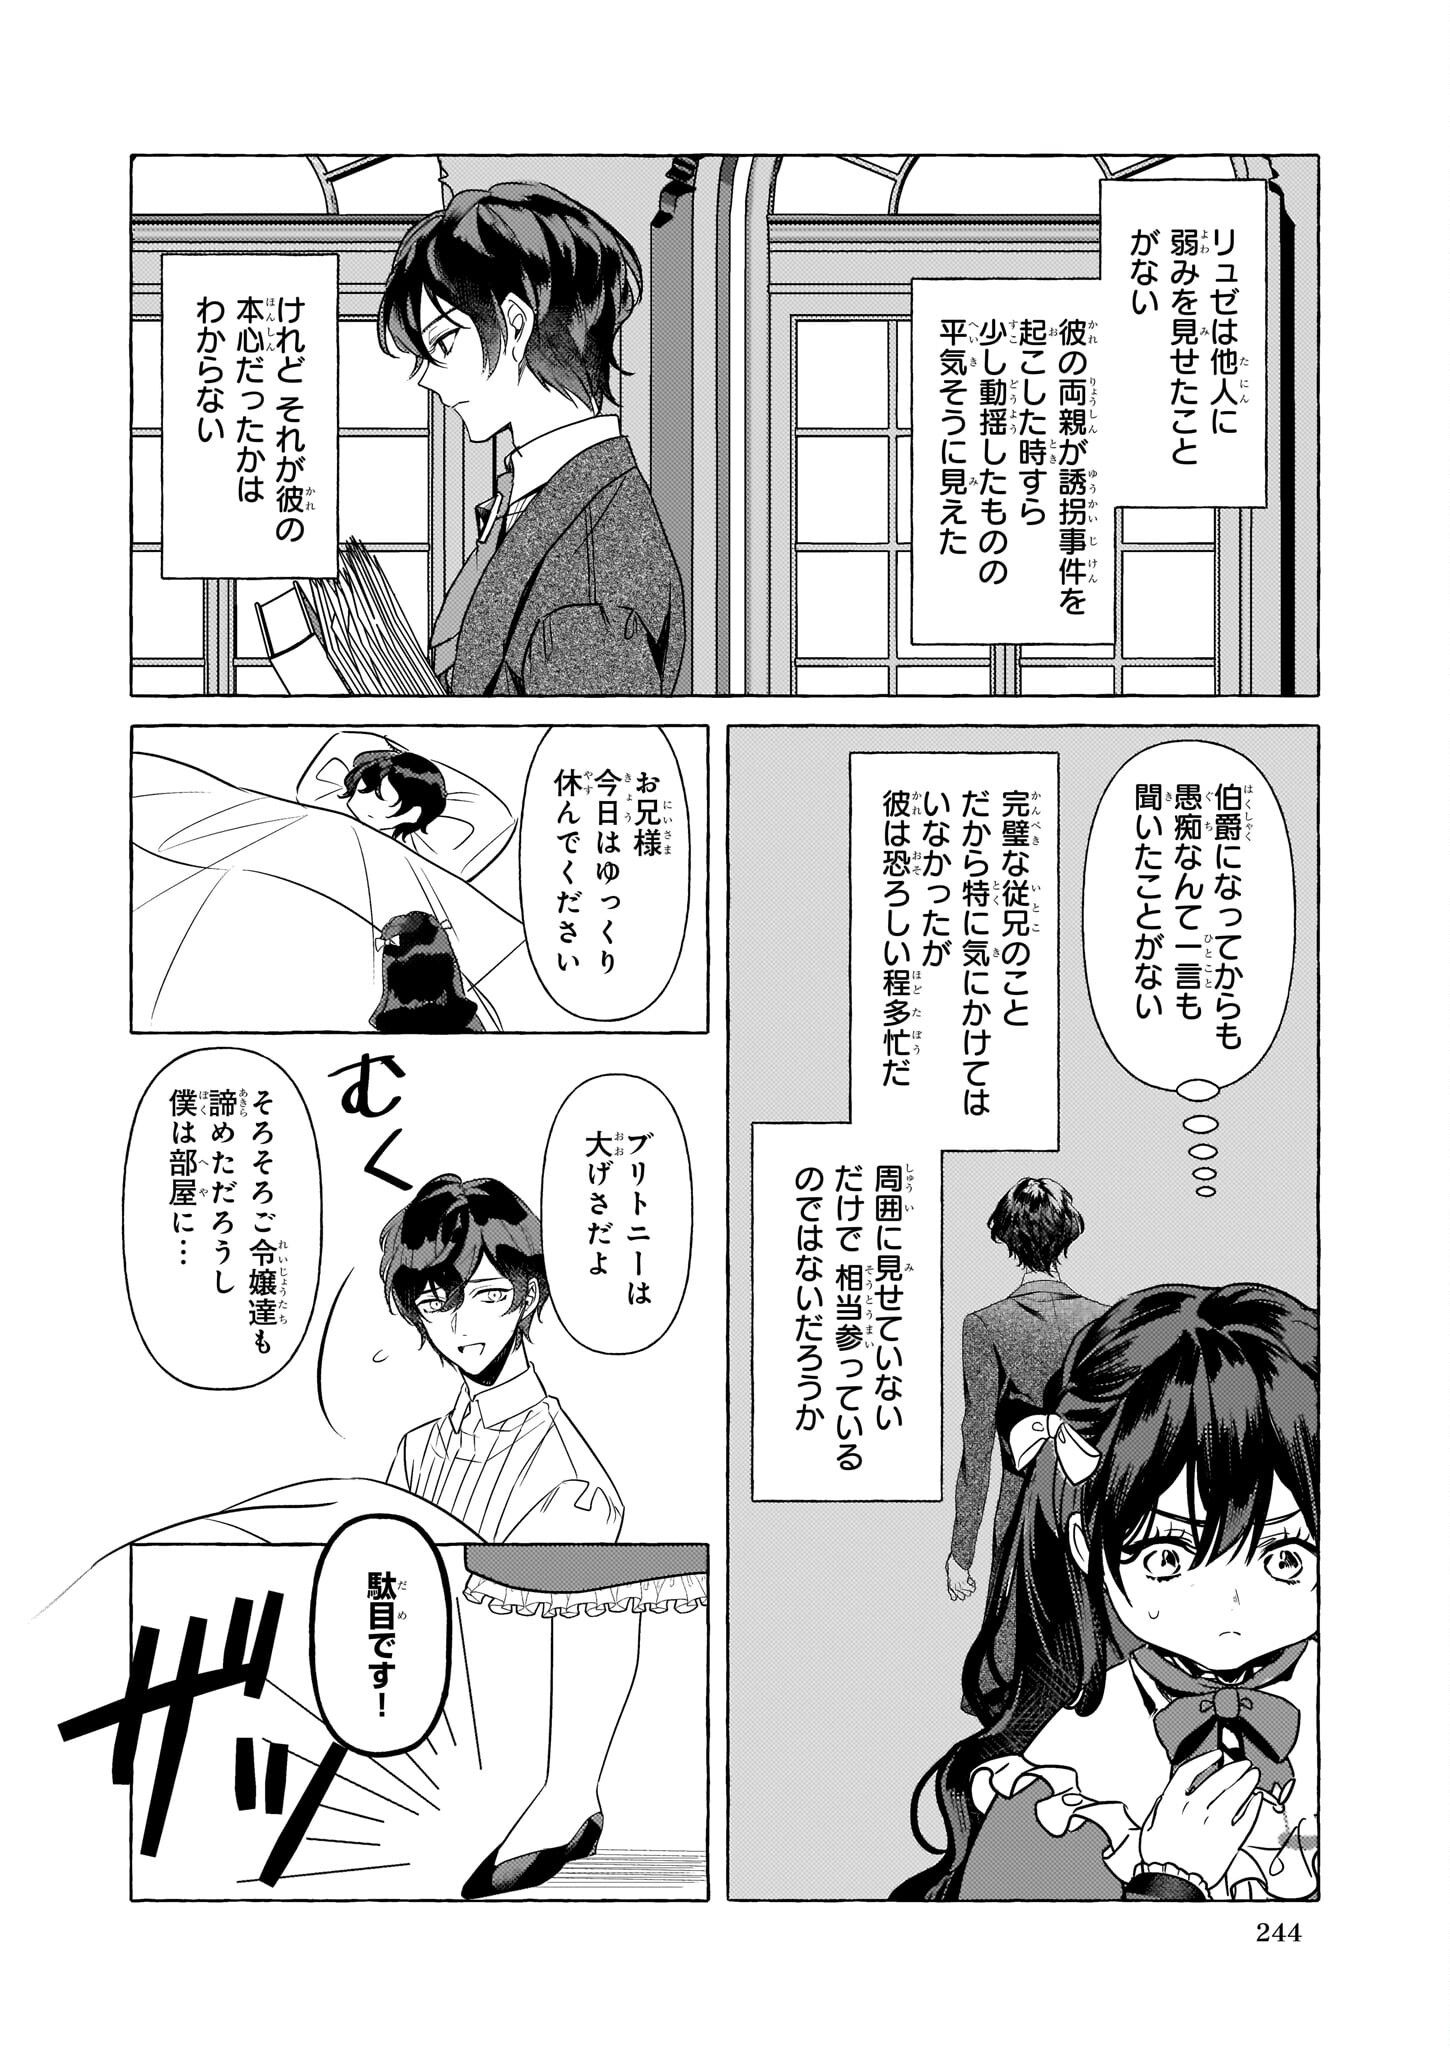 Tenseisaki ga Shoujo Manga no Shirobuta Reijou datta reBoooot! - Chapter 17 - Page 2